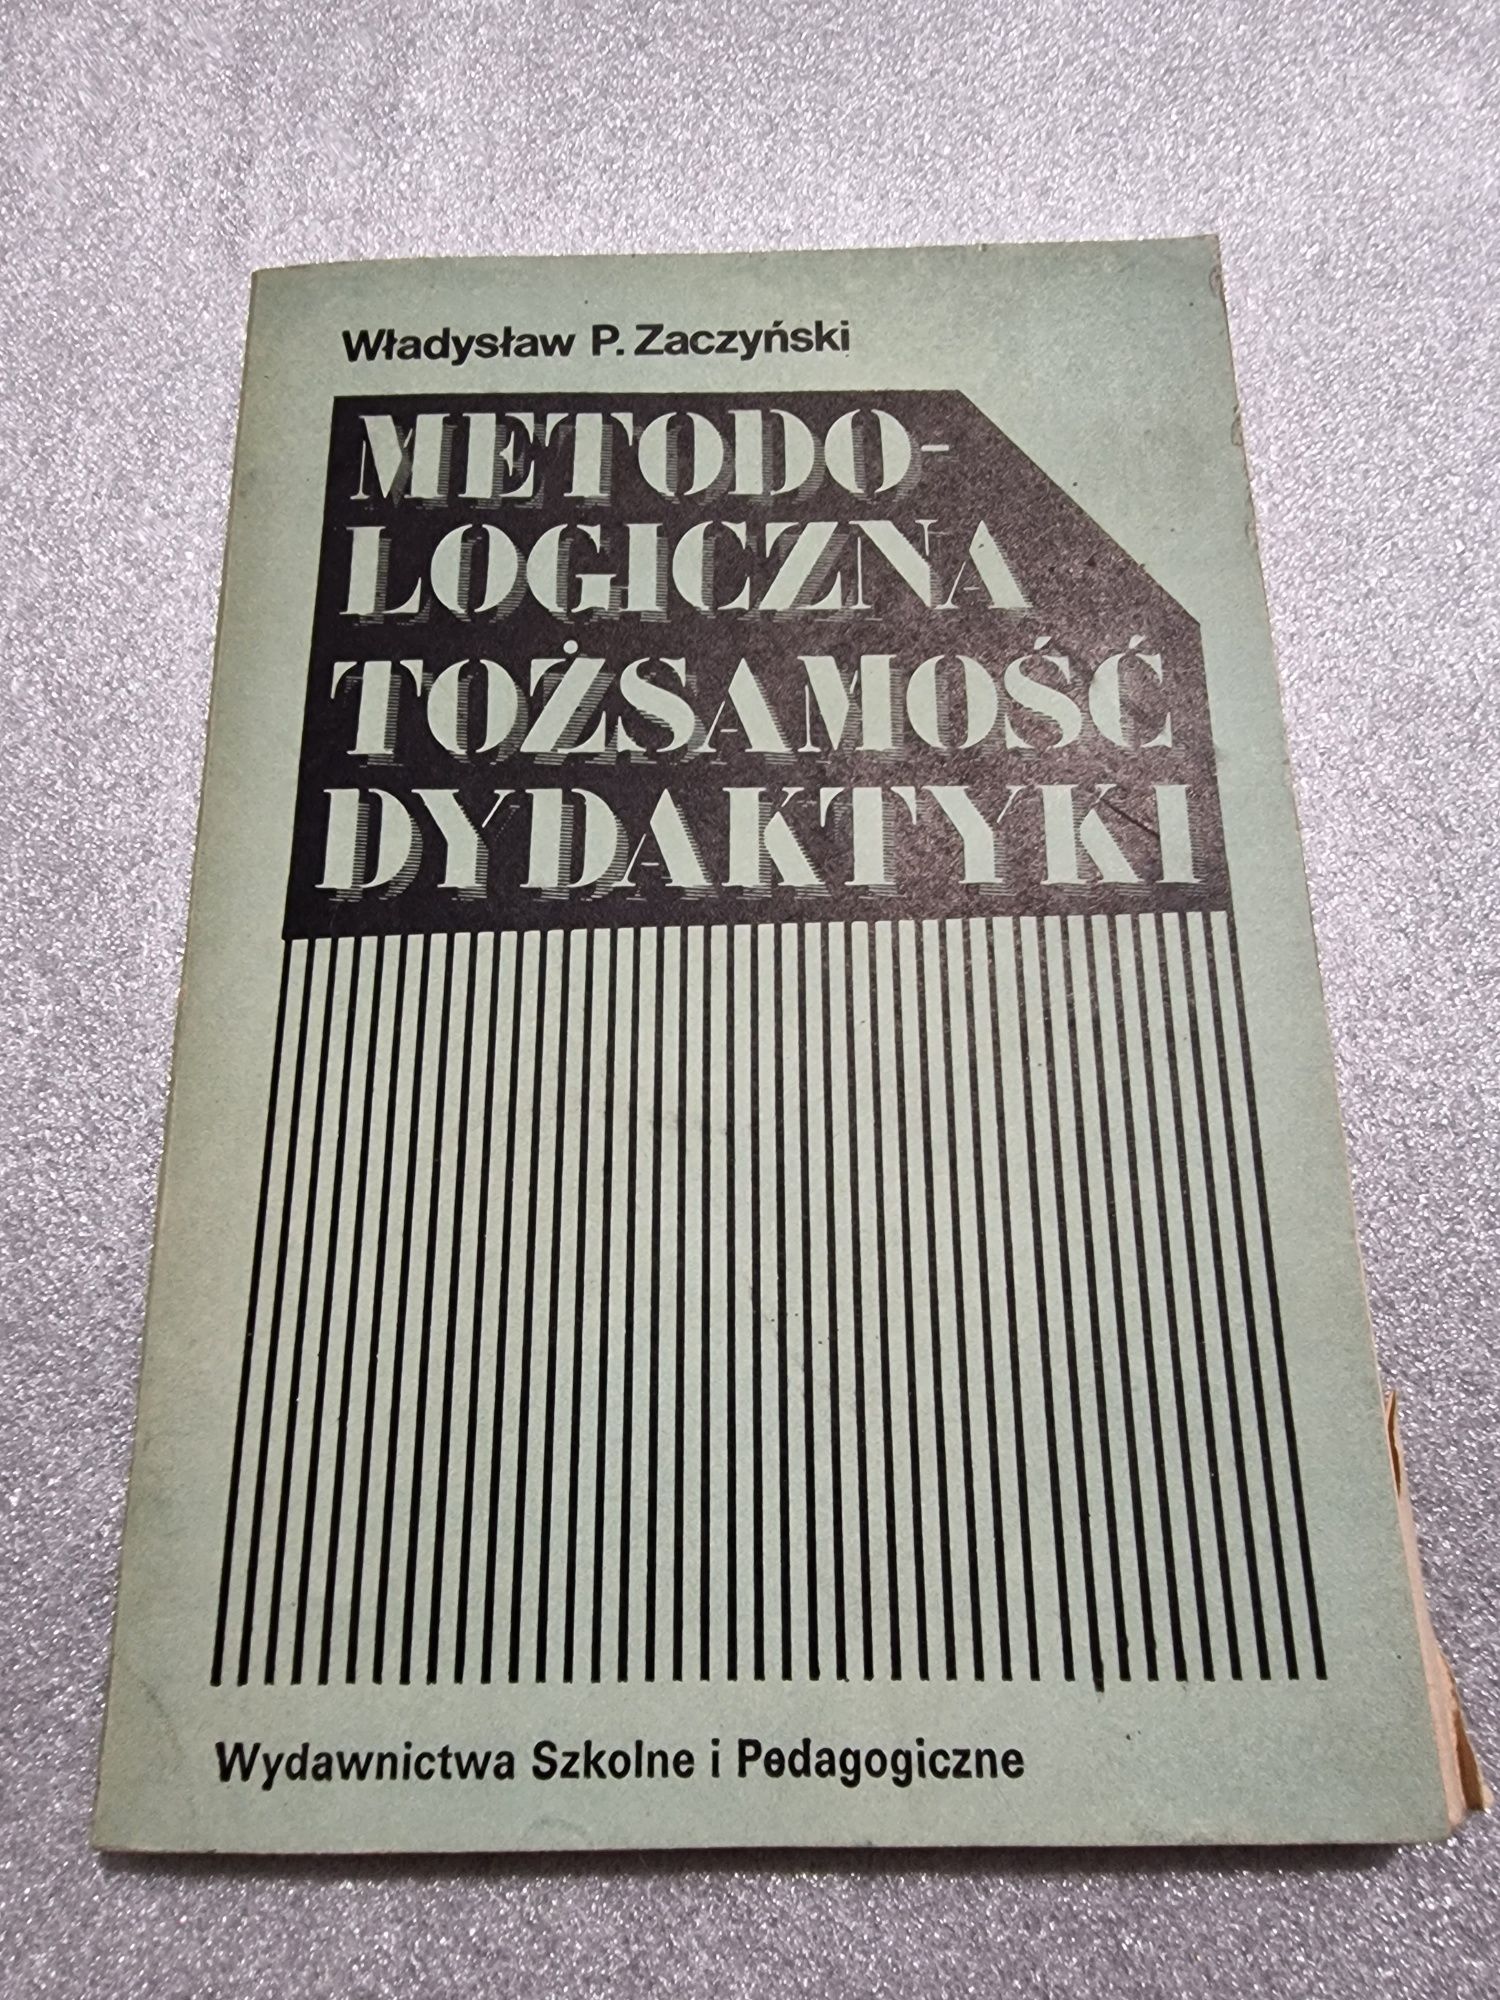 Metodologiczna tożsamość dydaktyki Władysław P. Zaczyński